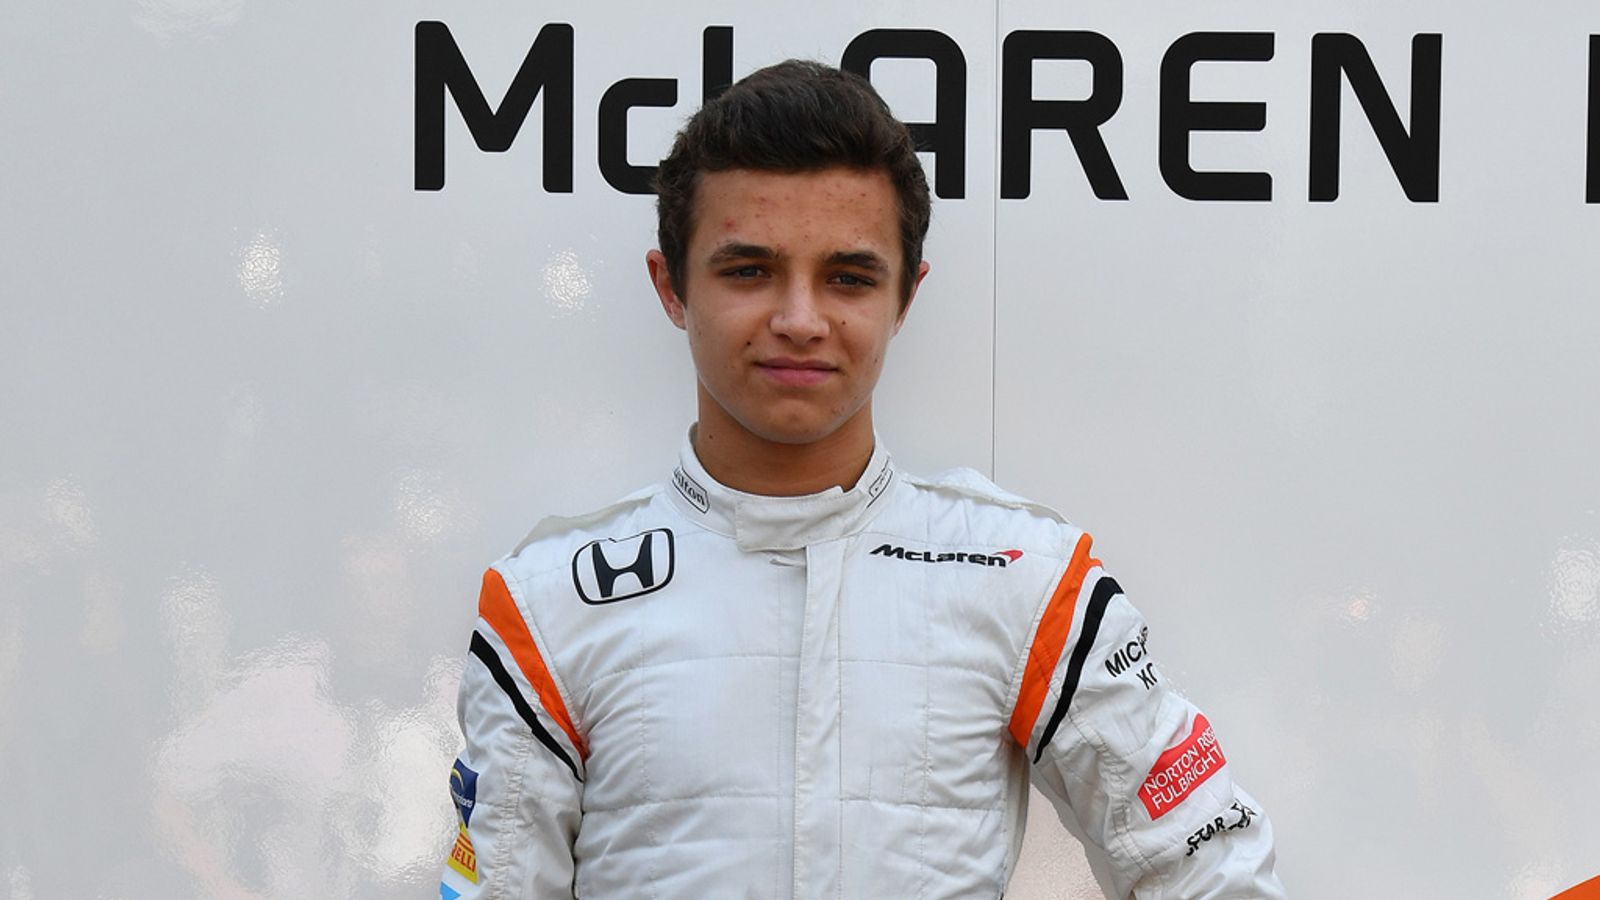 Lando Norris to race for McLaren in F1 2019 as Stoffel Vandoorne ...